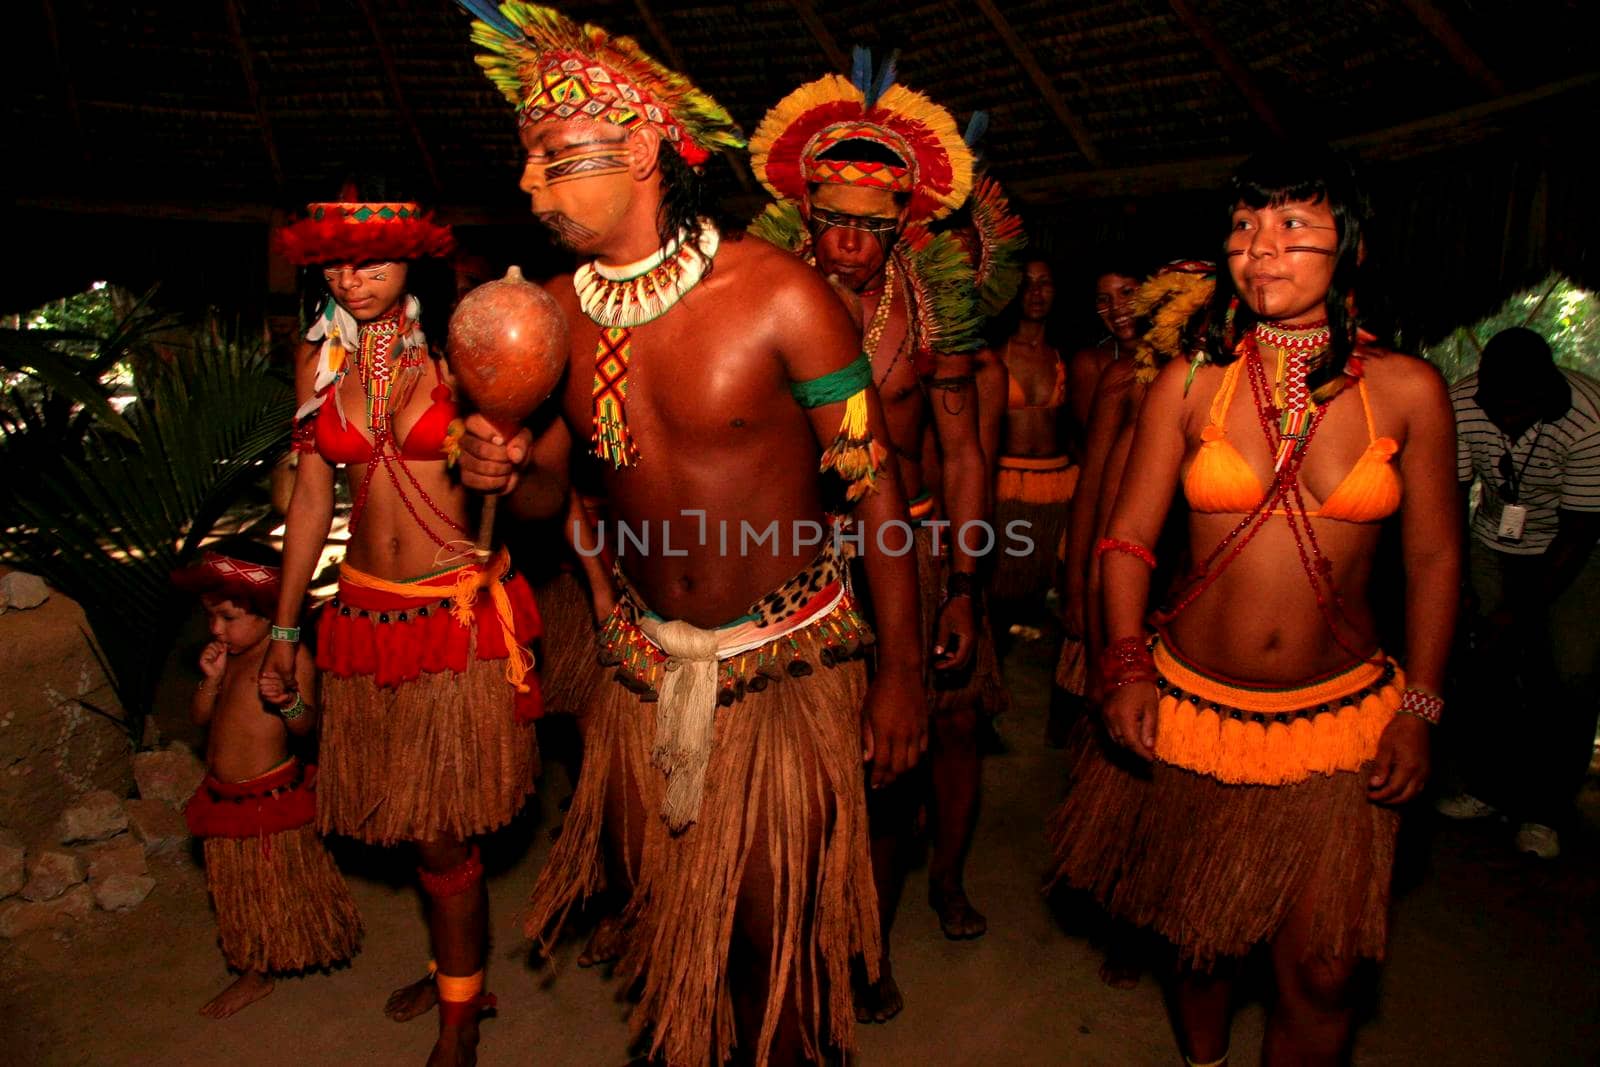 porto seguro, bahia / brazil - april 14, 2009: Indians of the Pataxo ethnicity are seen in the village of Jaqueira in the Porto Seguro municipality.